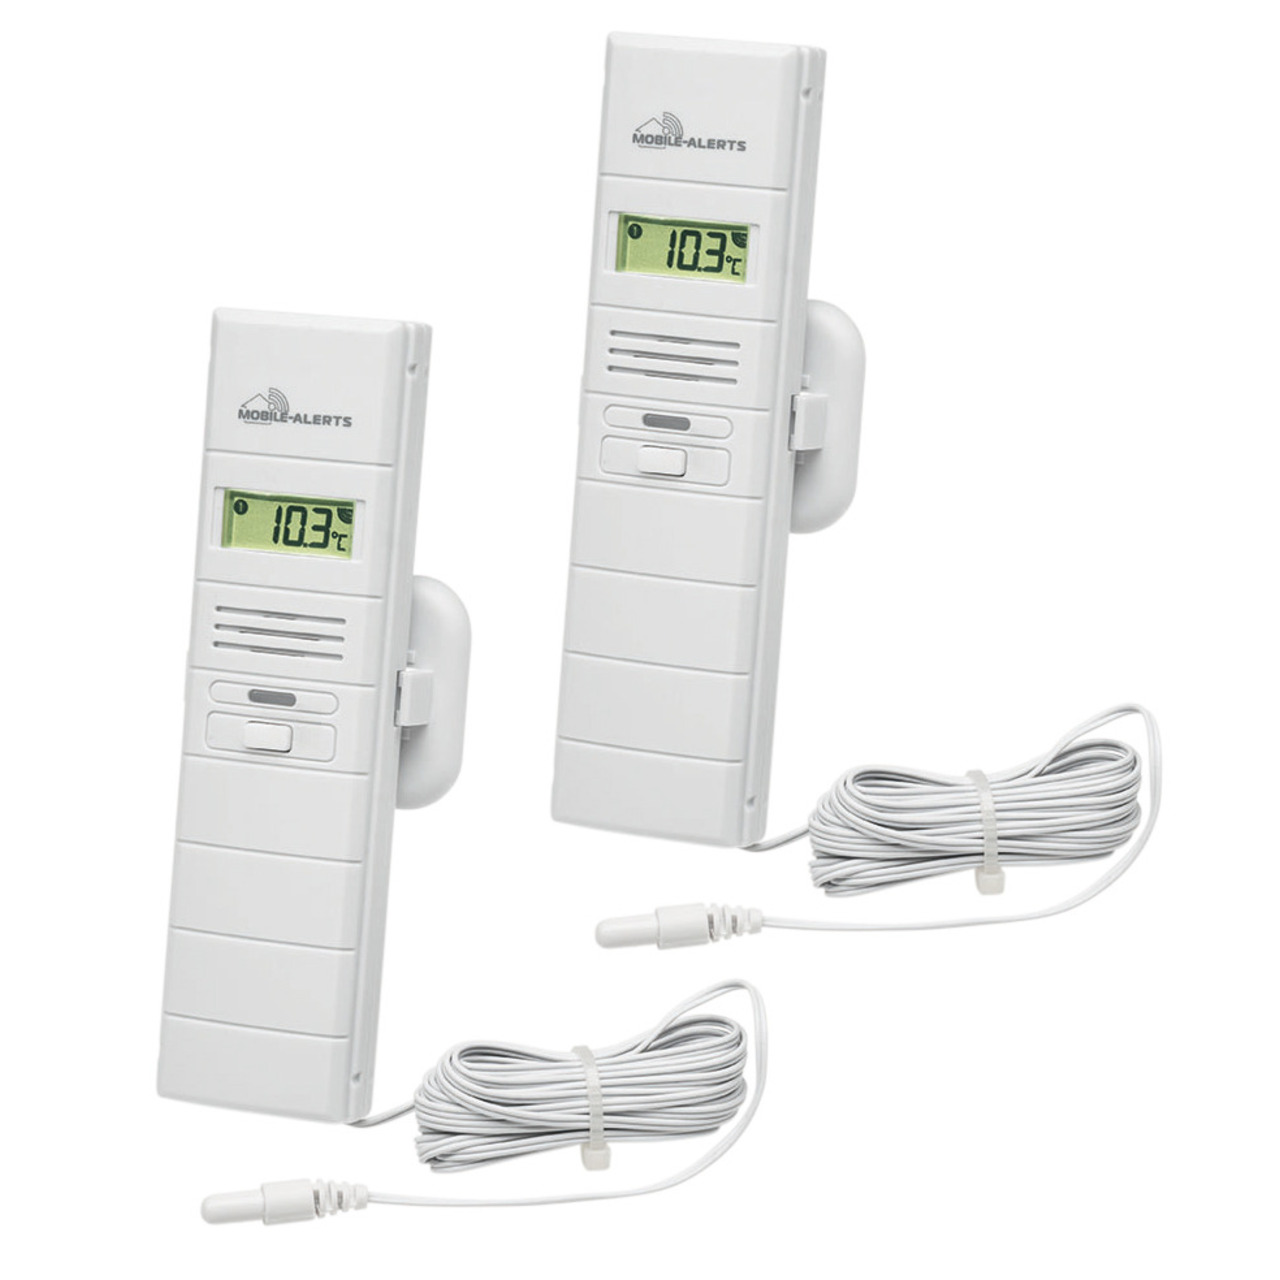 ELV 2er-Spar-Set Mobile Alerts Thermo-Hygrosensor MA10300 und zusätzlichem Temperaturfühler